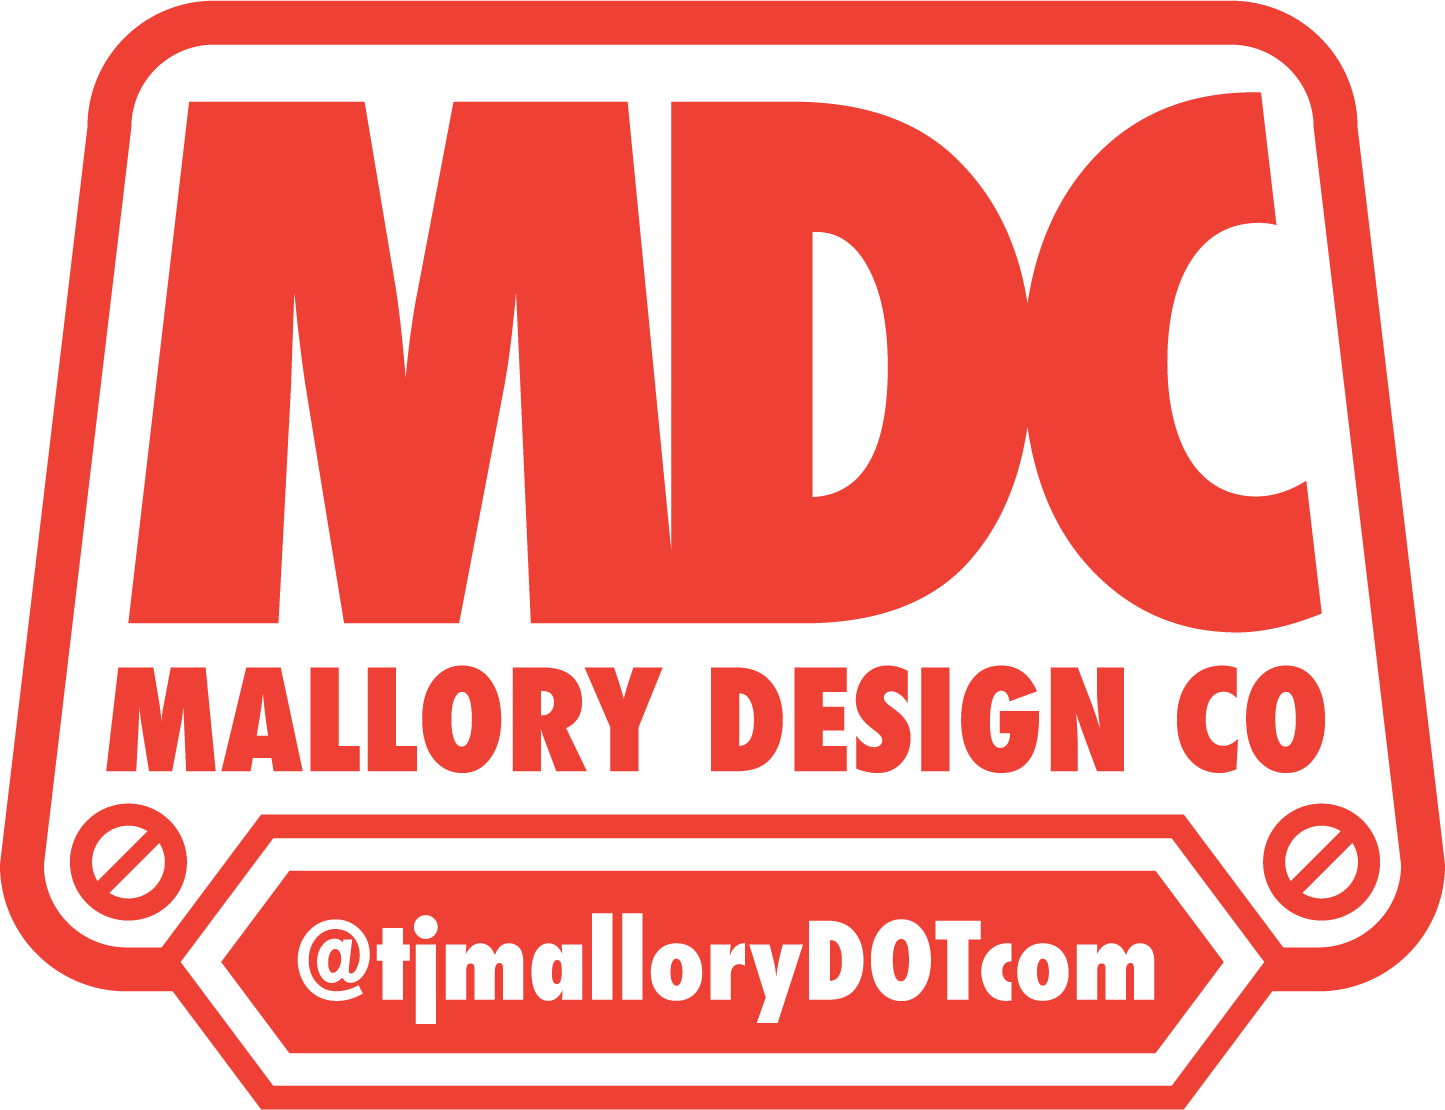 MALLORY DESIGN CO.